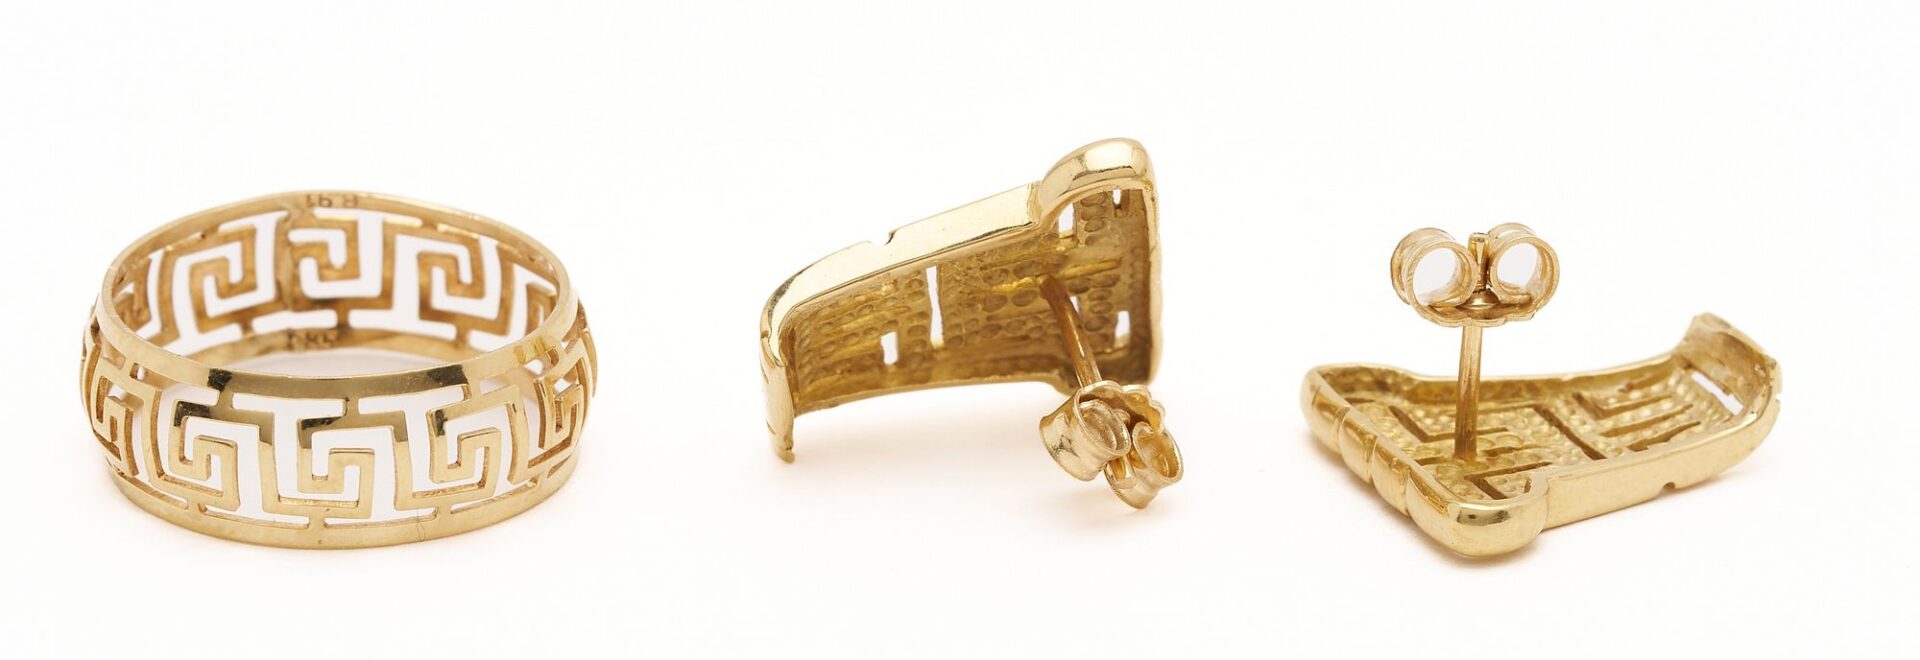 Lot 314: Three (3) 14K Gold Greek Key Jewelry – Necklace, Earrings, Ring